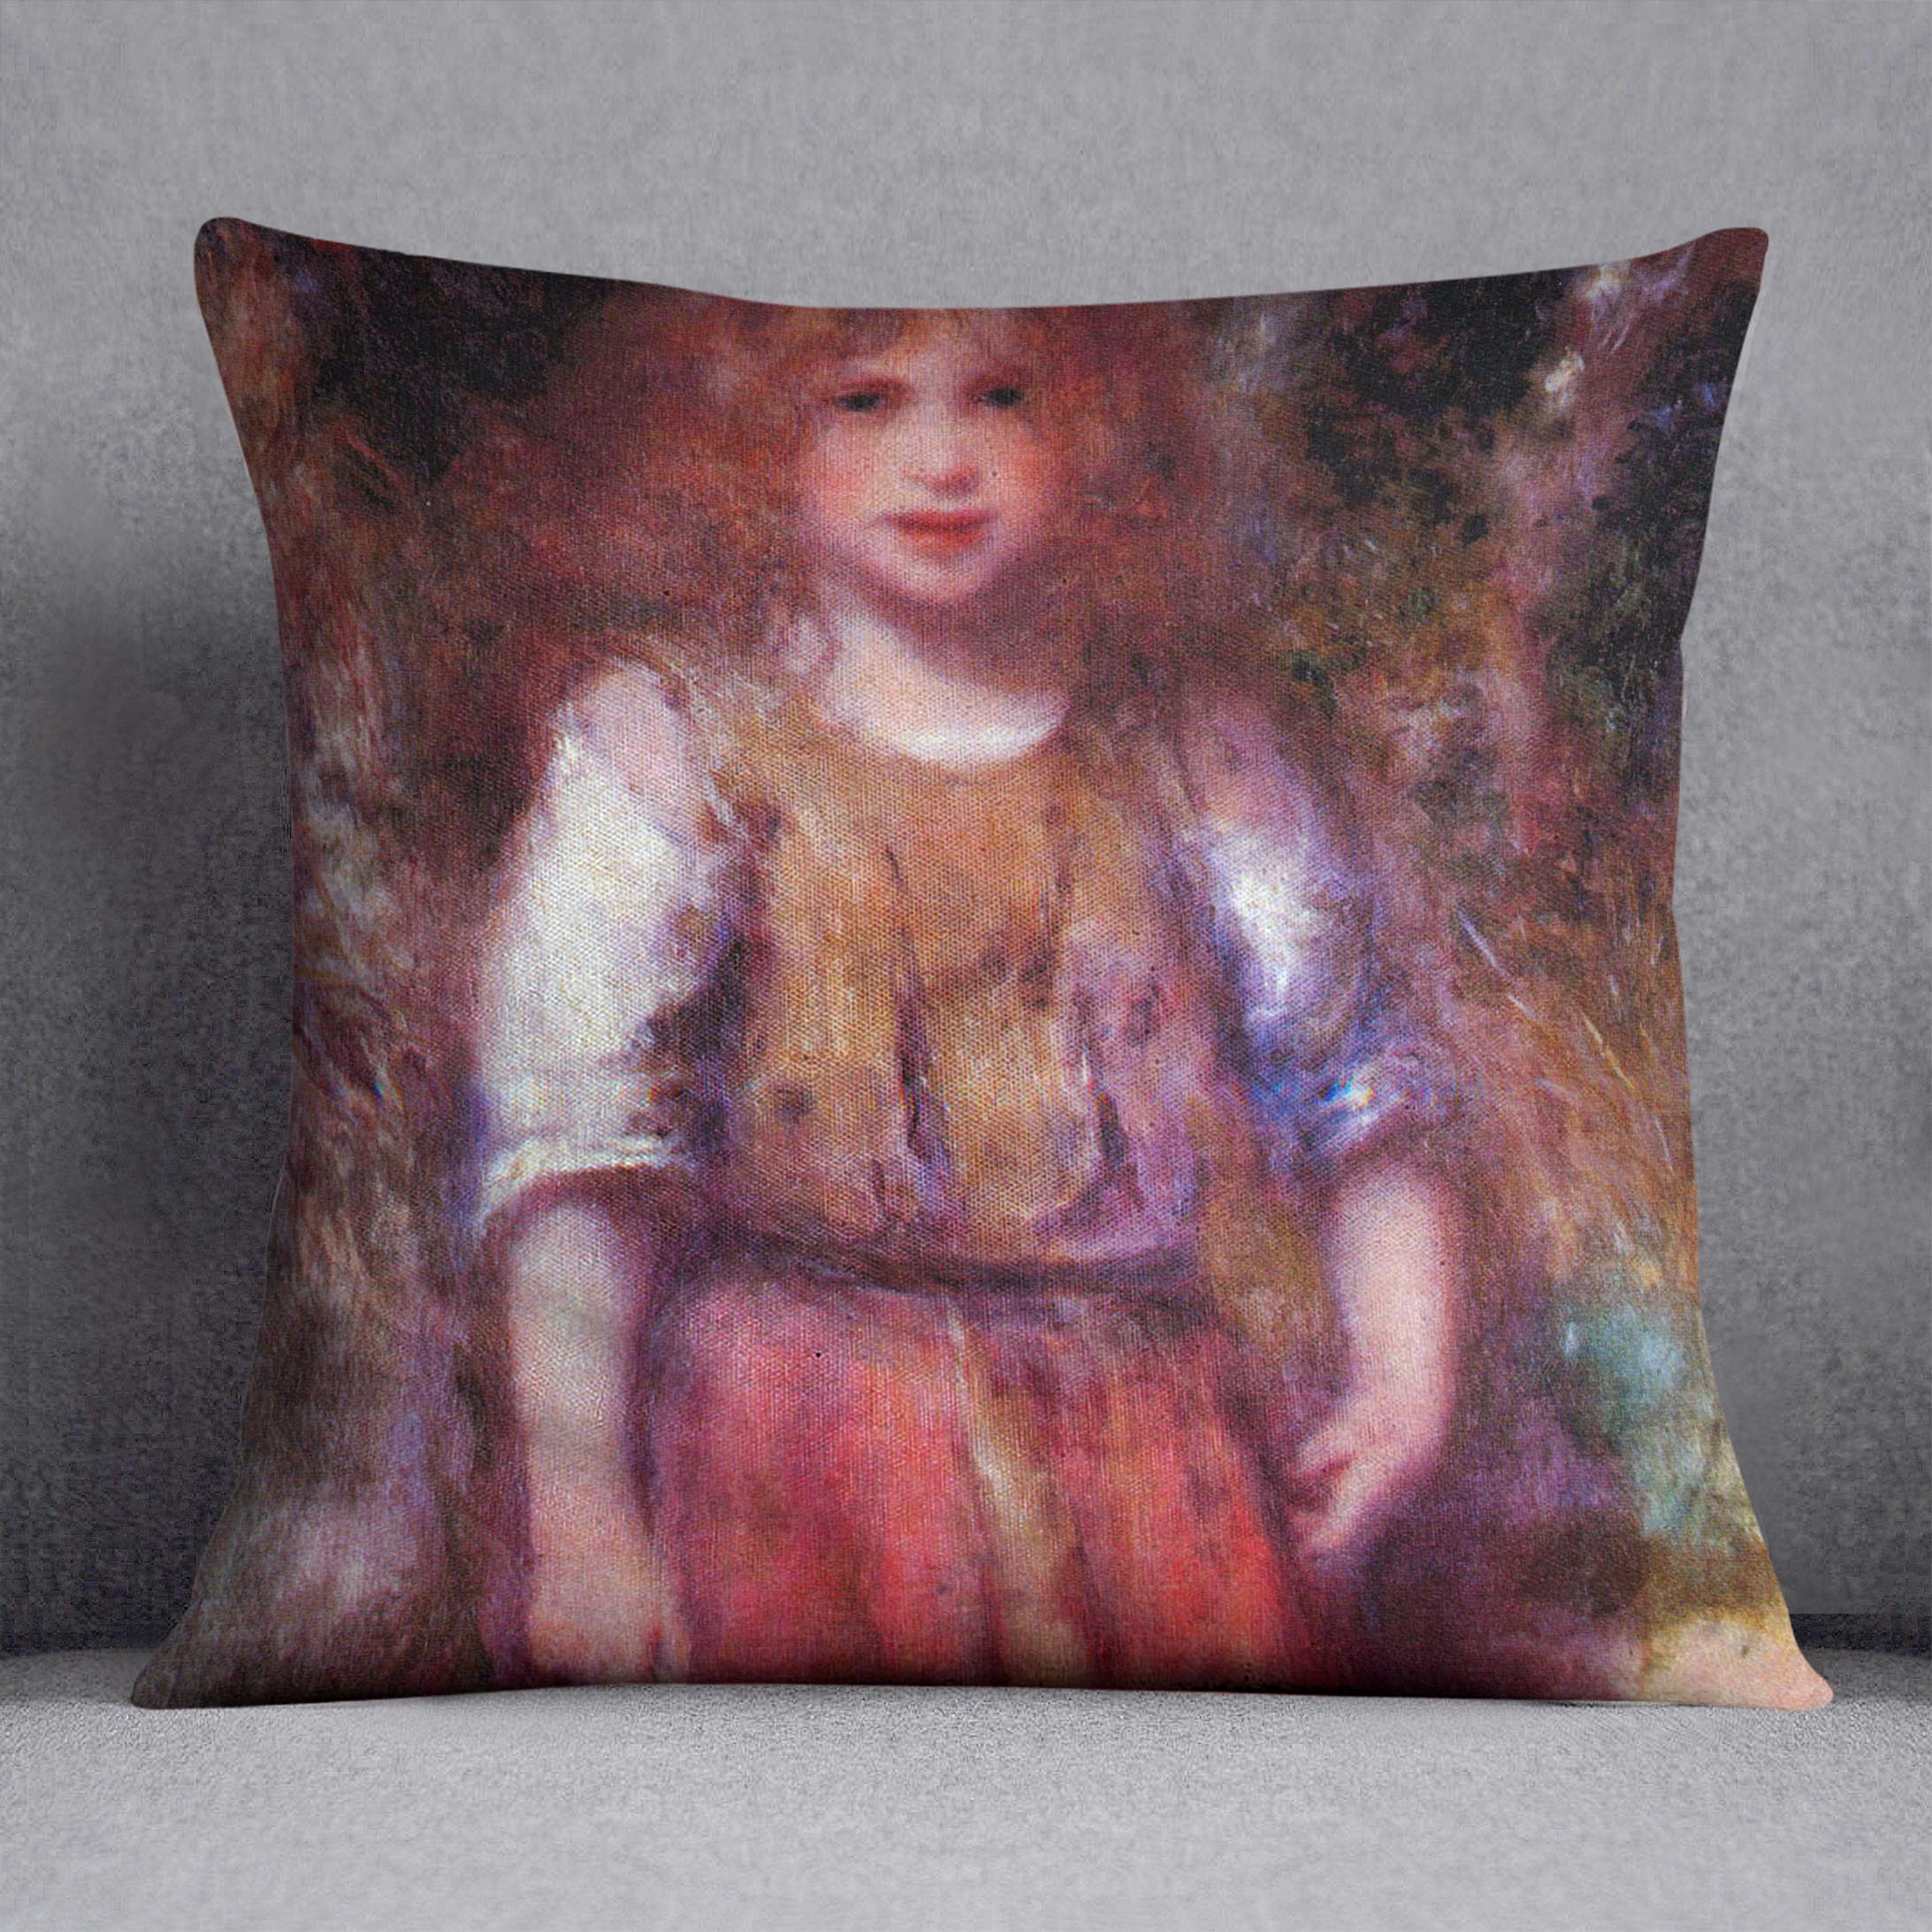 Gypsy girl by Renoir Cushion